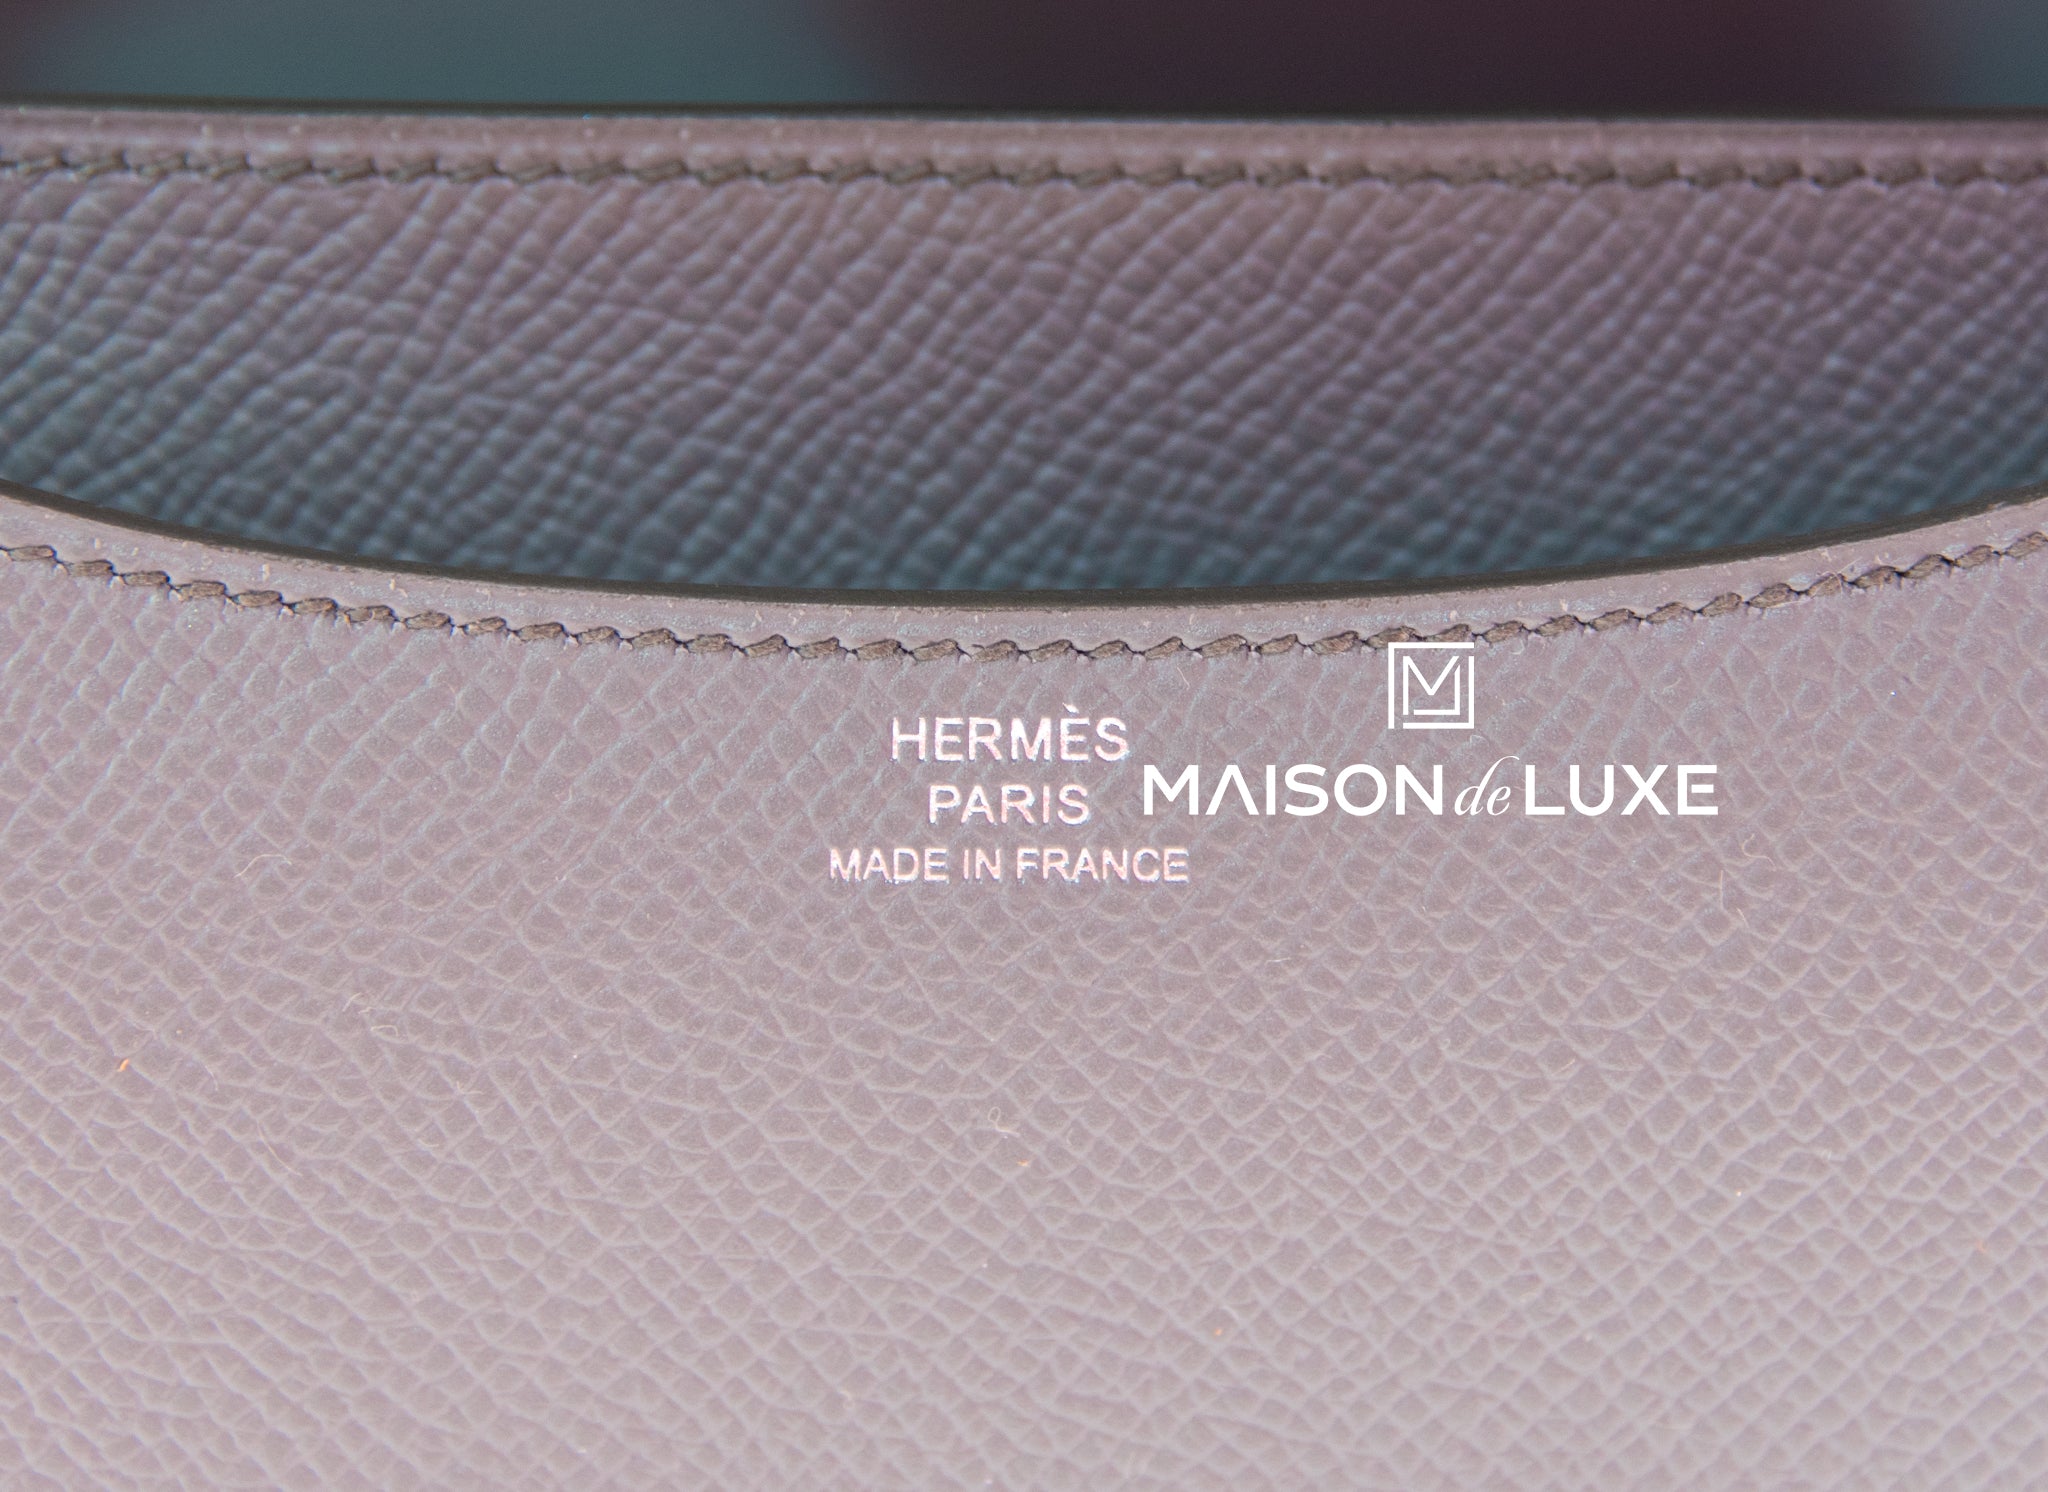 FirstsBrandname - New Hermes C18 Vert Amande Epsom D full set